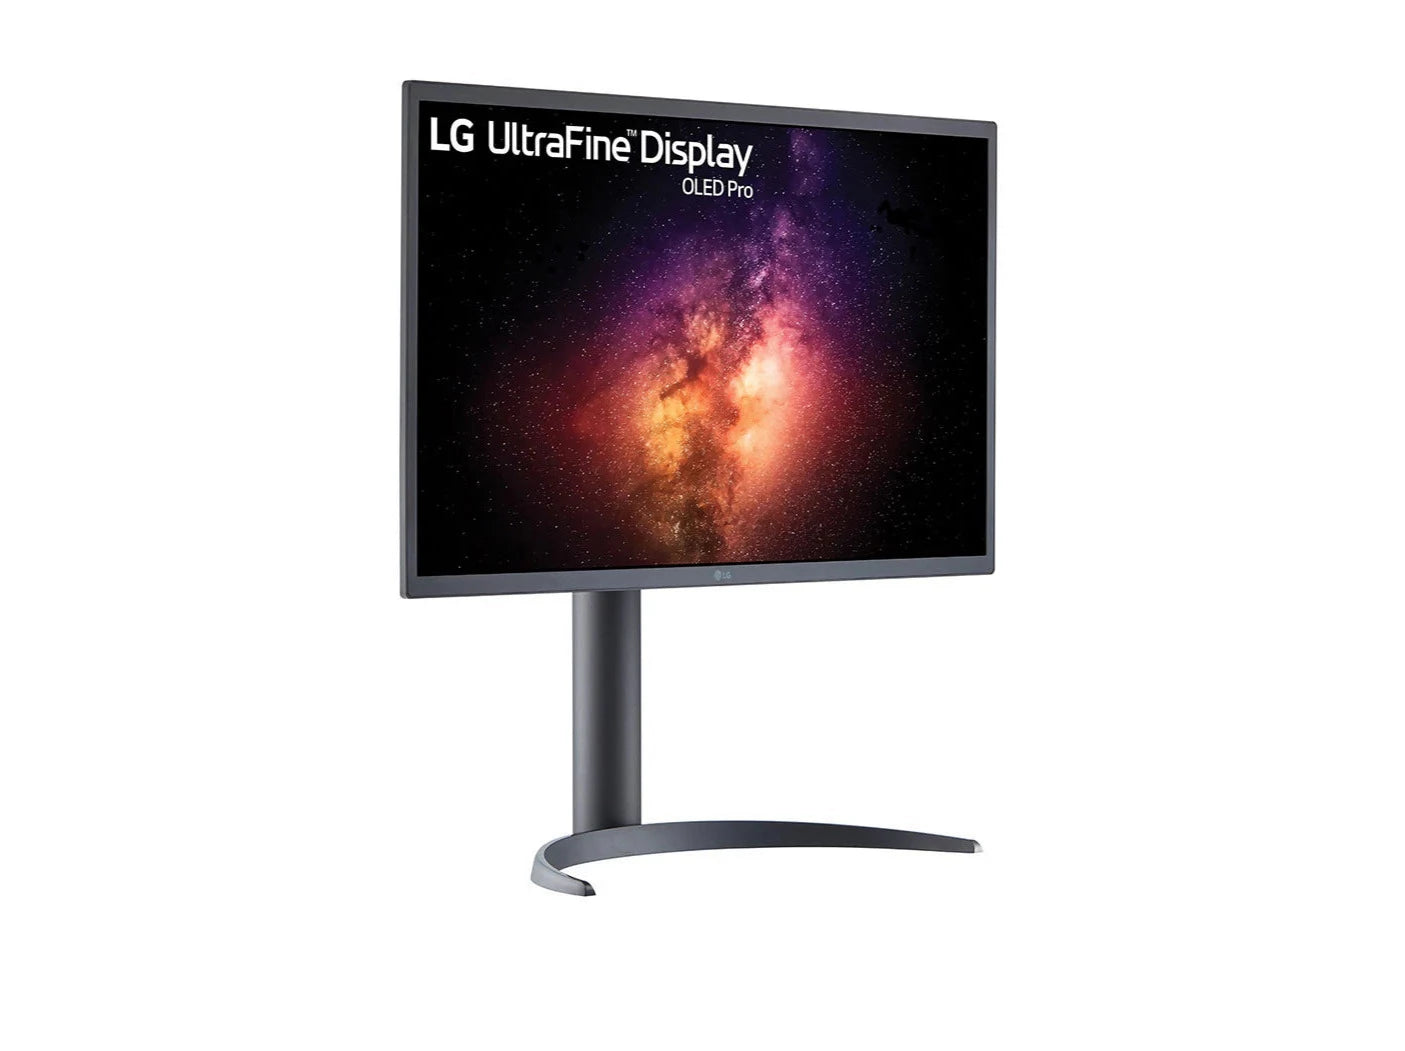 LG 32EP950-B 4K OLED Monitor előlnézetben jobbra fordítva, talpon. A kijelzőn világűr és galaxisok lg ultrafine display oled pro logóval.